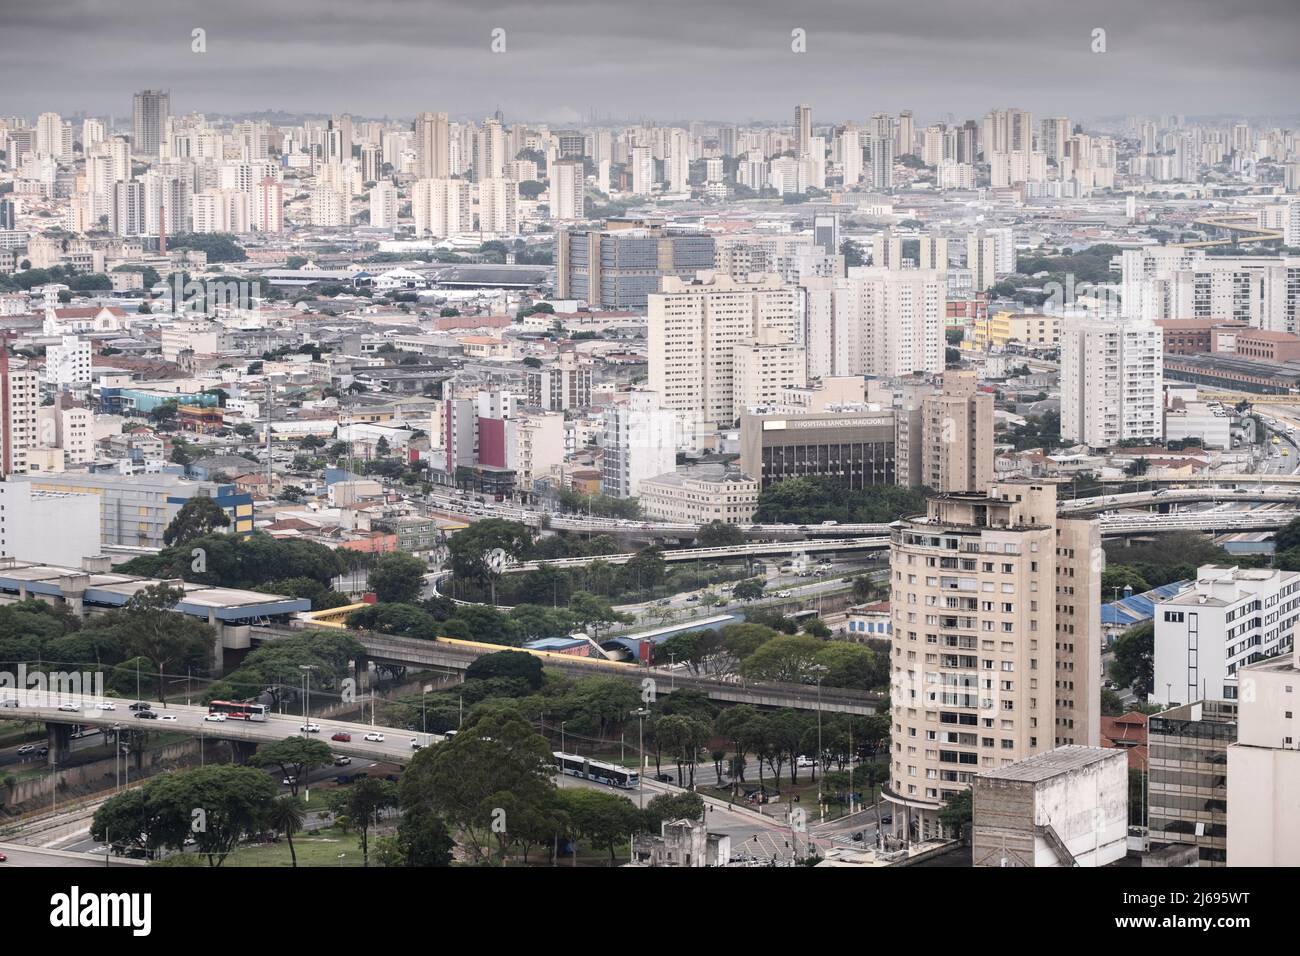 Vista elevada de las autopistas urbanas, Avenida do Estado y el puente Diario Popular, el centro de la ciudad y edificios de hormigón, Sao Paulo, Brasil Foto de stock